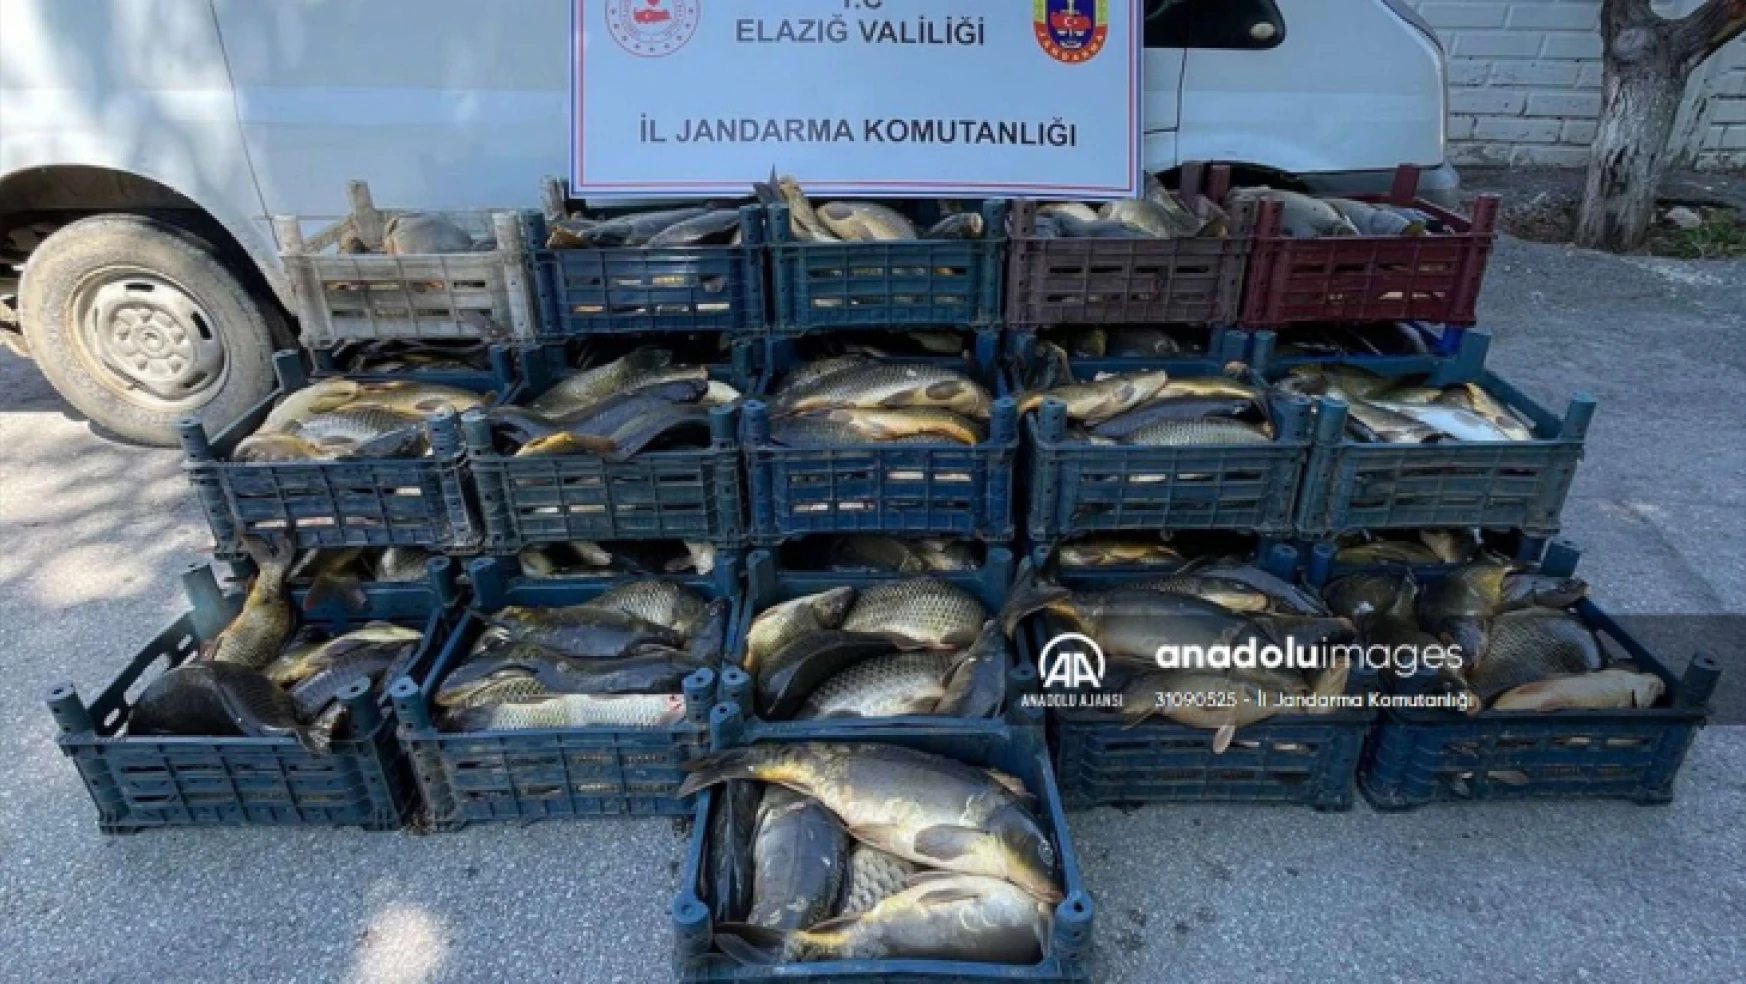 Elazığ'da kaçak avlanan 1 ton 775 kilo balık ele geçirildi